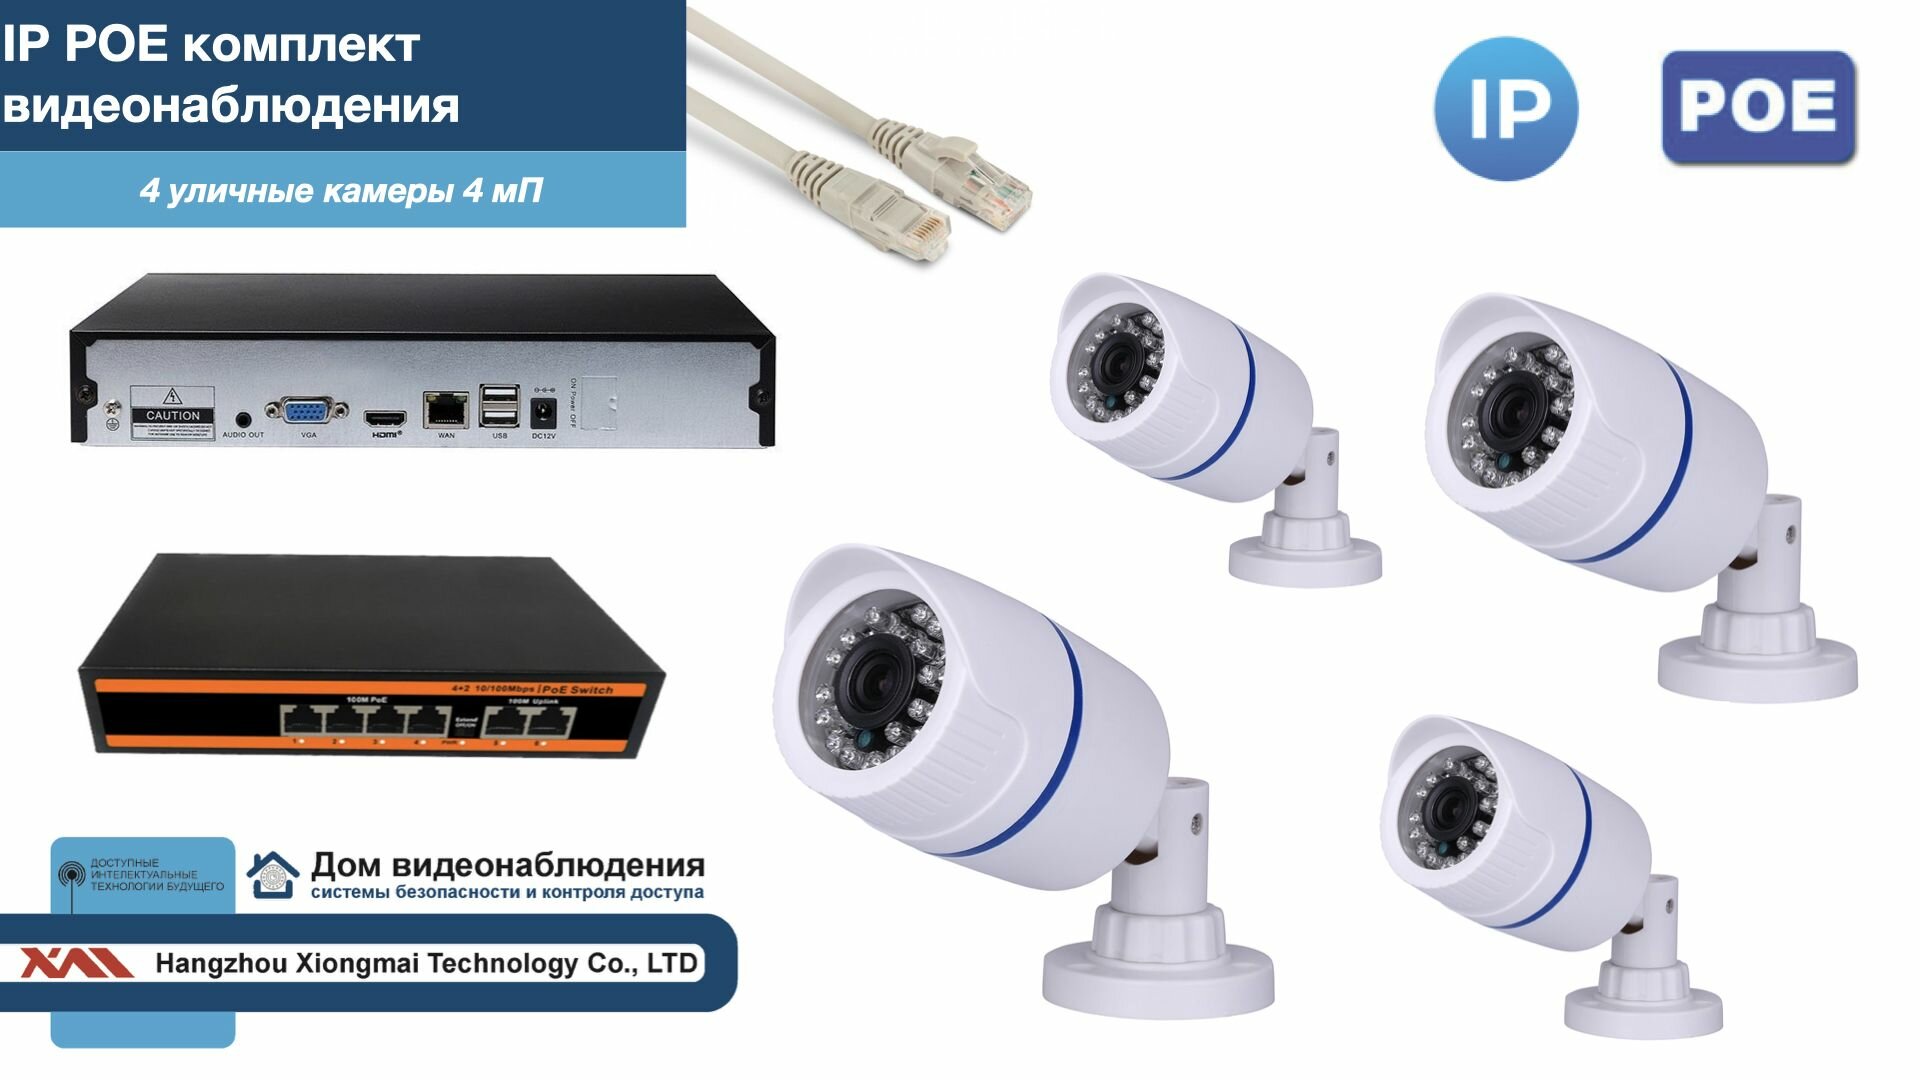 Полный IP POE комплект видеонаблюдения на 4 камеры (KIT4IPPOE100W4MP)